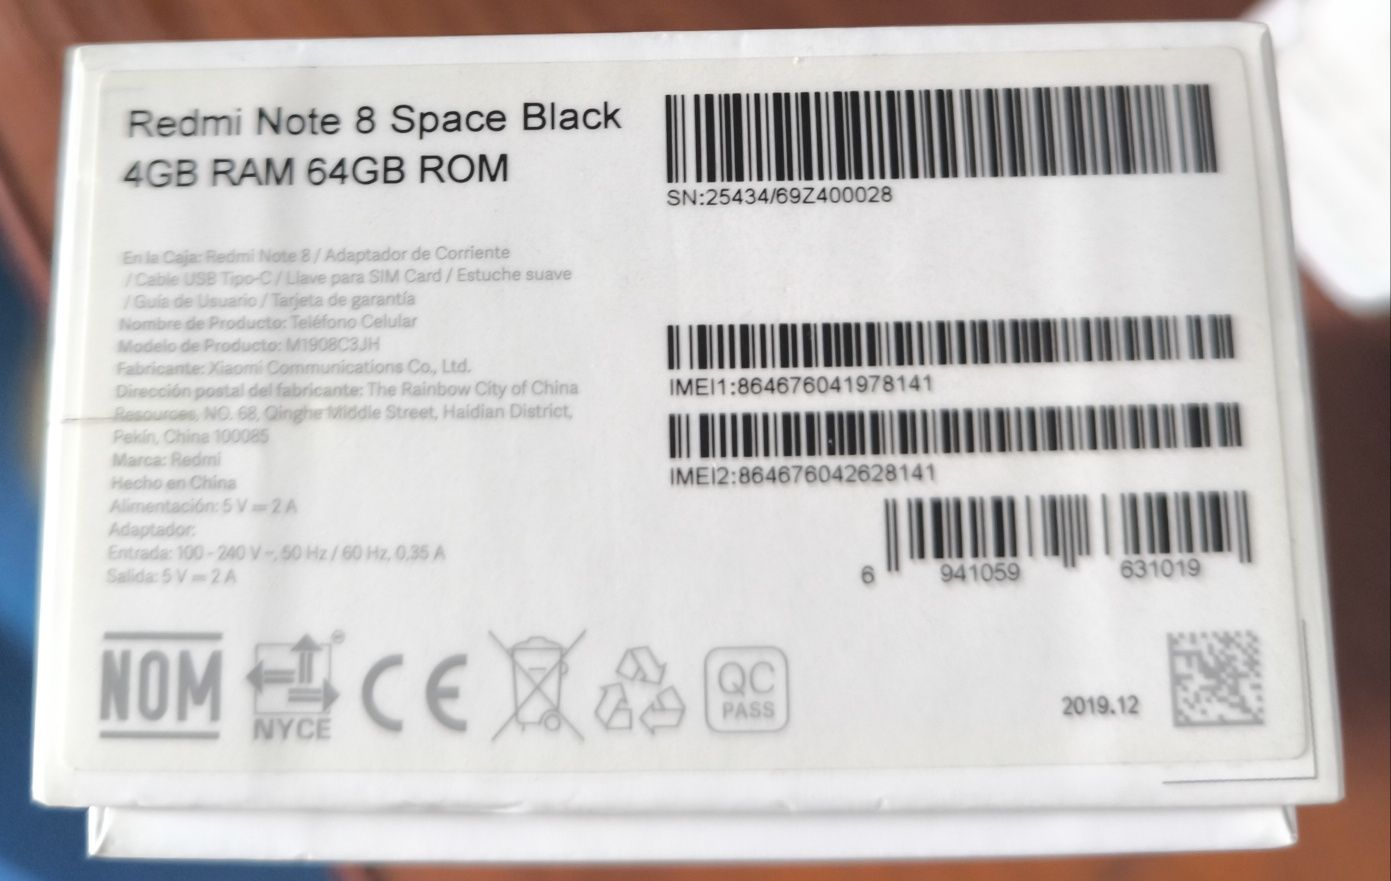 Redmi Note 8 Space Black